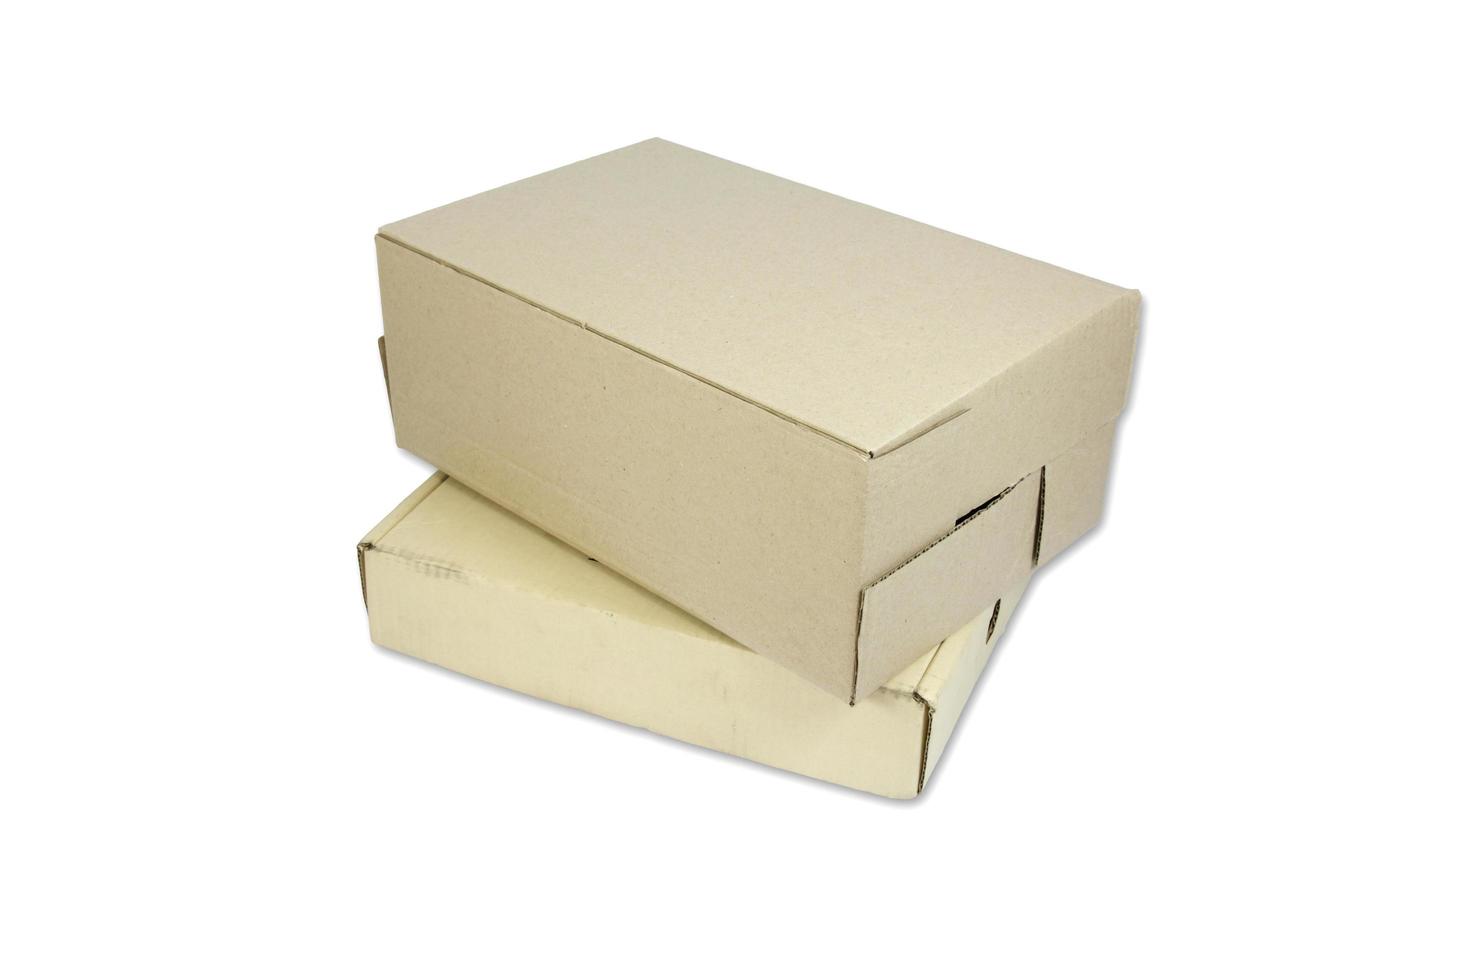 Corrugated cardboard box isolated on white background photo